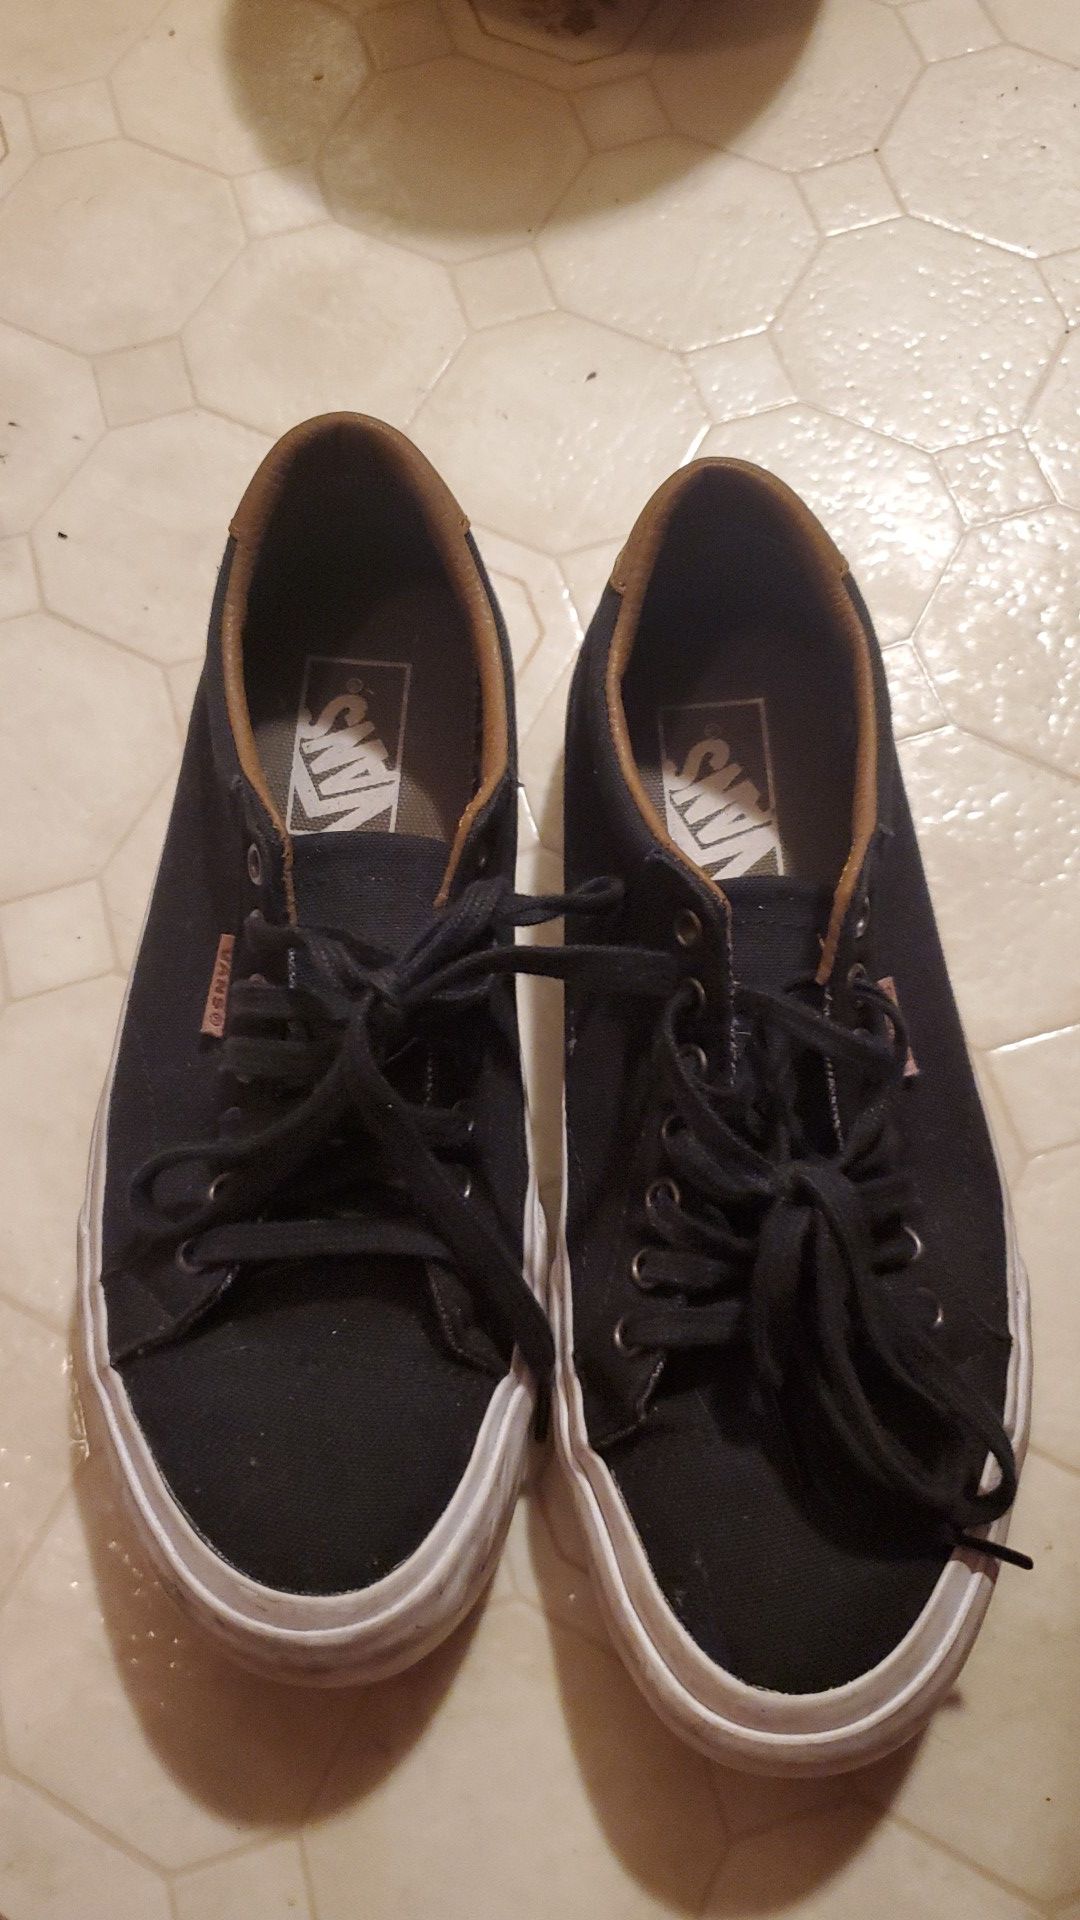 Van's shoes